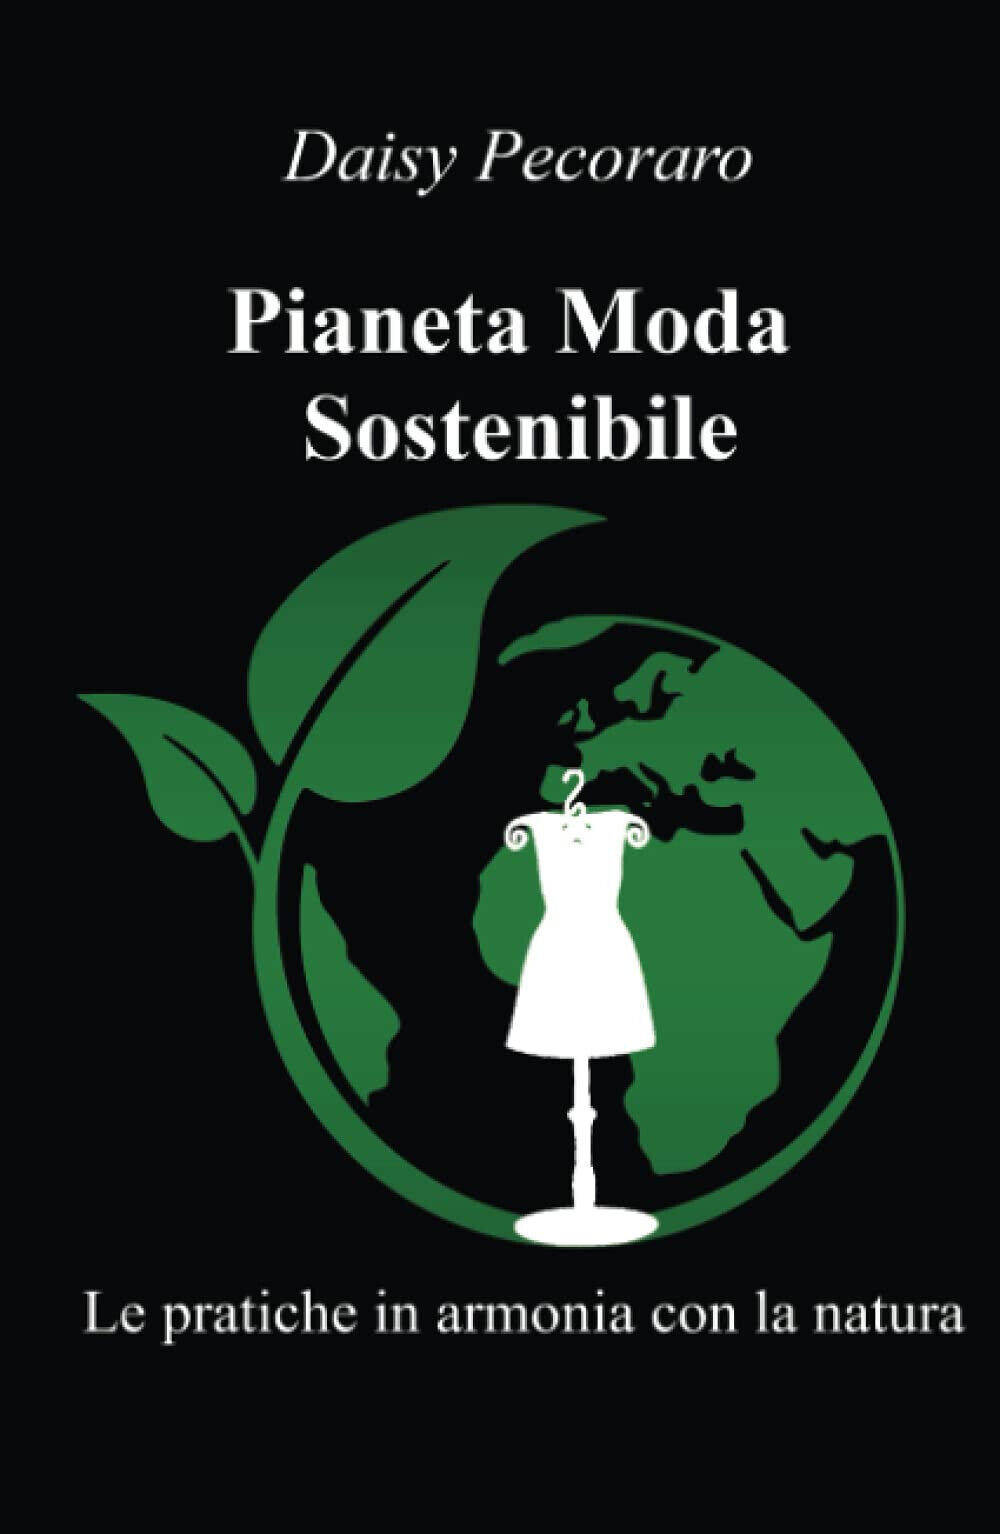 Pianeta Moda Sostenibile - Daisy Pecoraro - ilmiolibro, 2021 libro usato